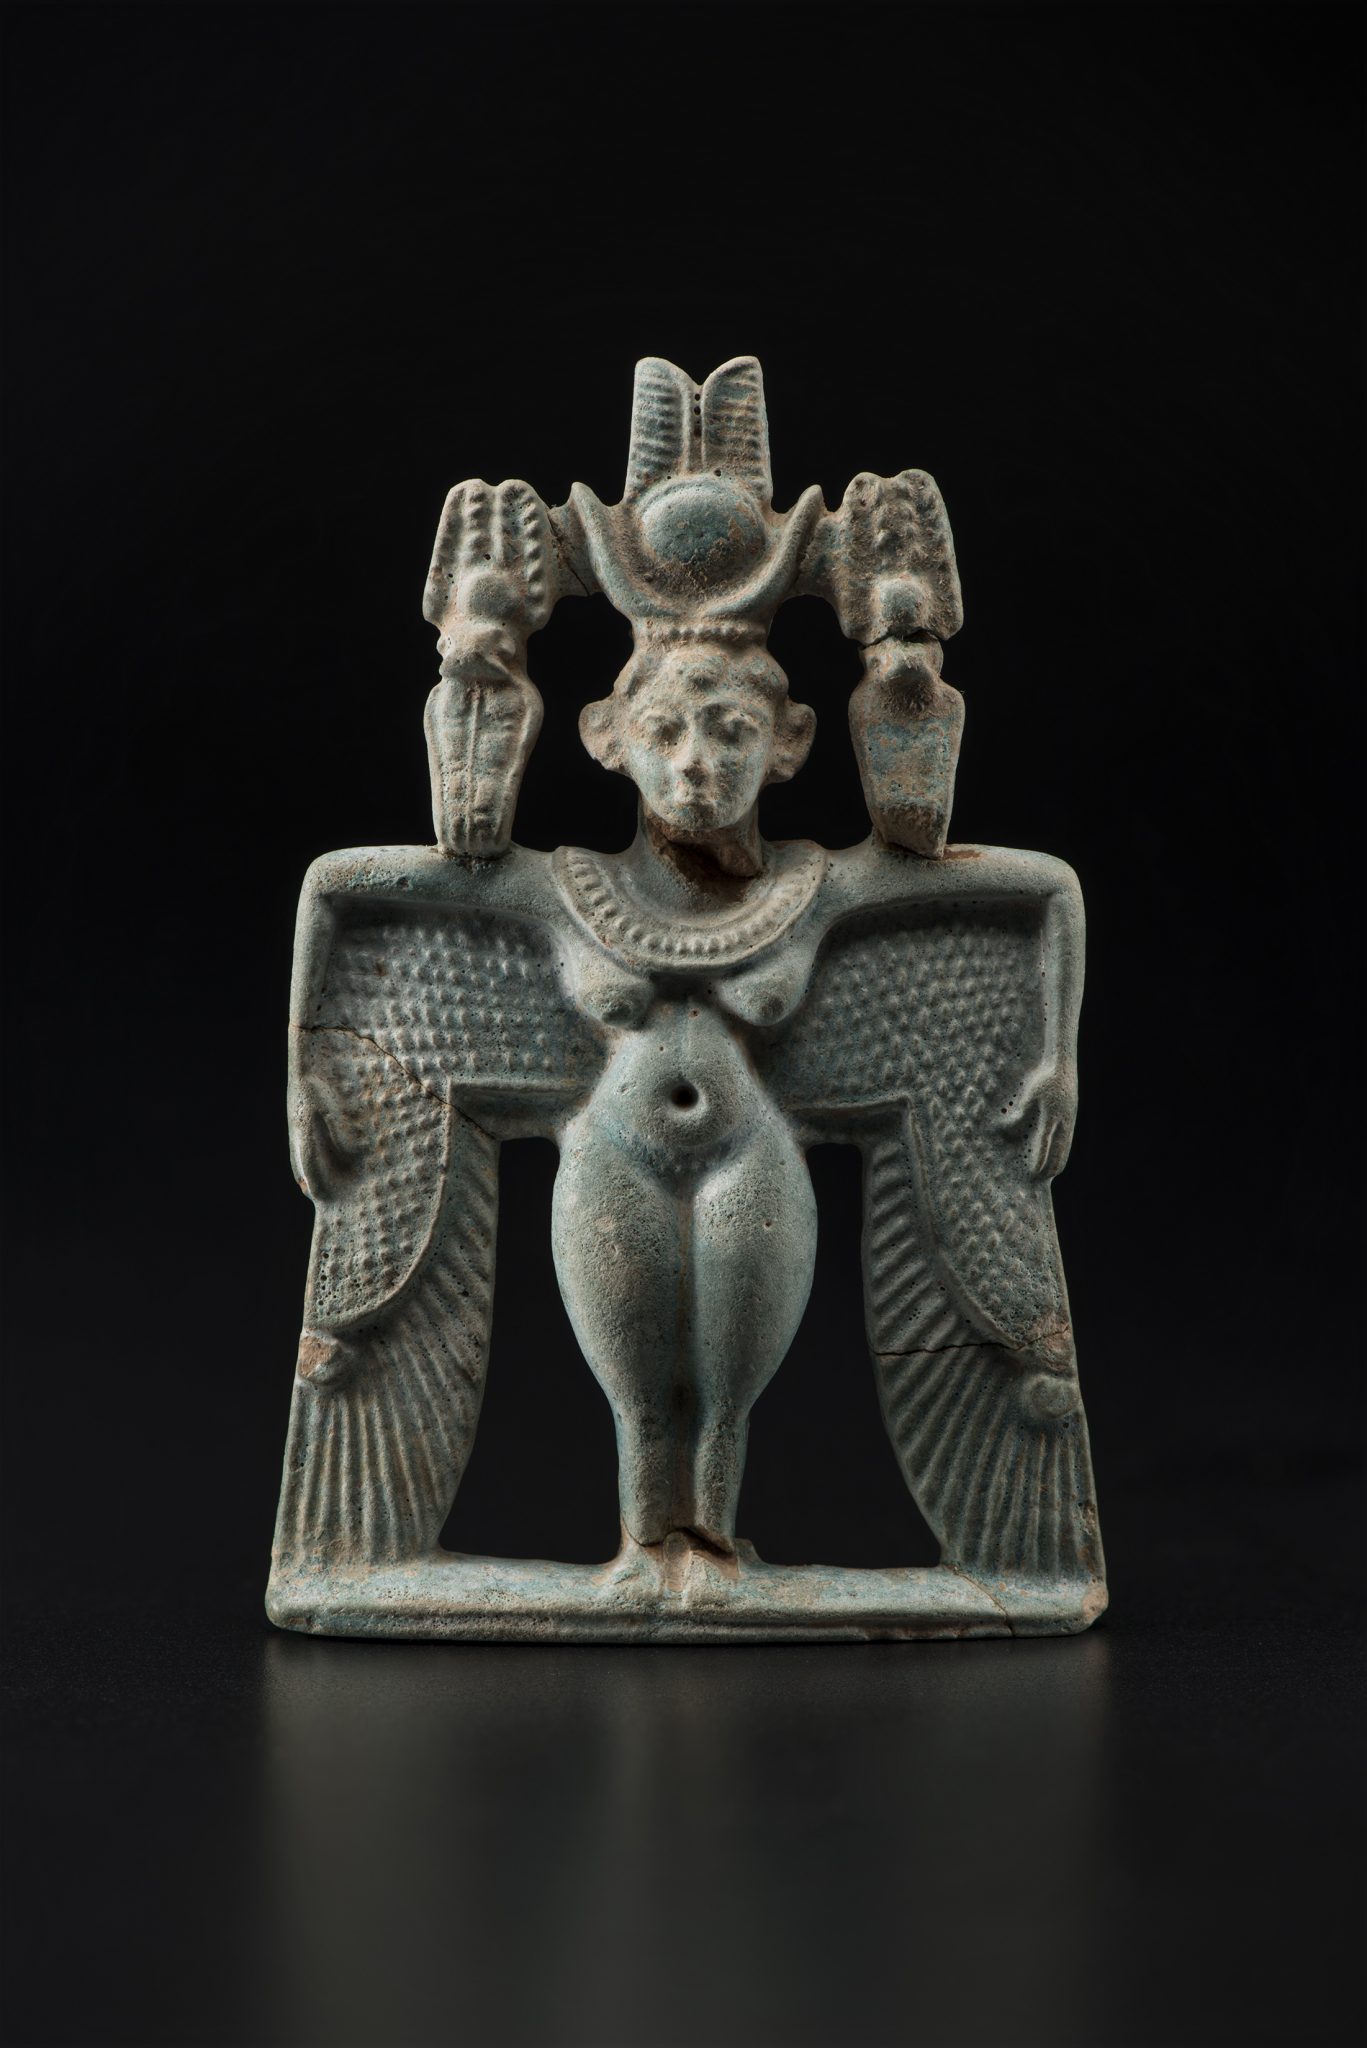 Шумерская богиня Инанна